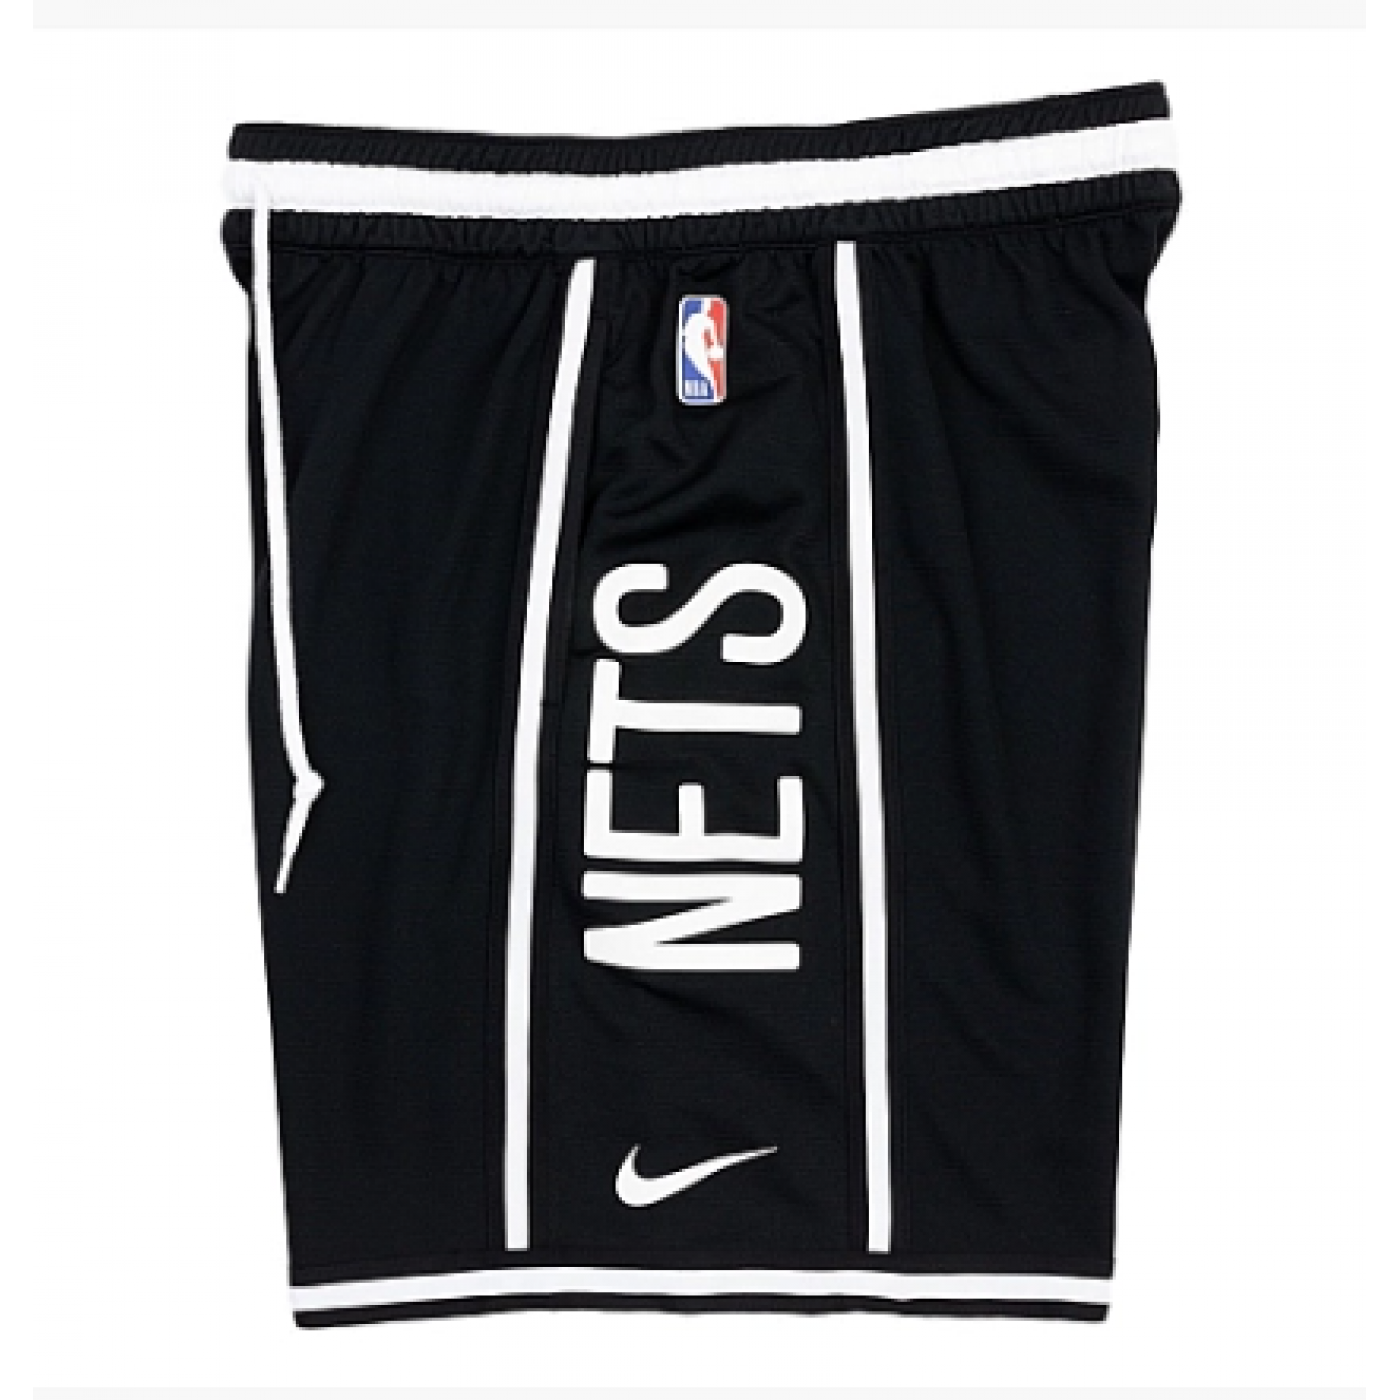 Brooklyn Nets DNA Nike Dri-FIT NBA Shorts